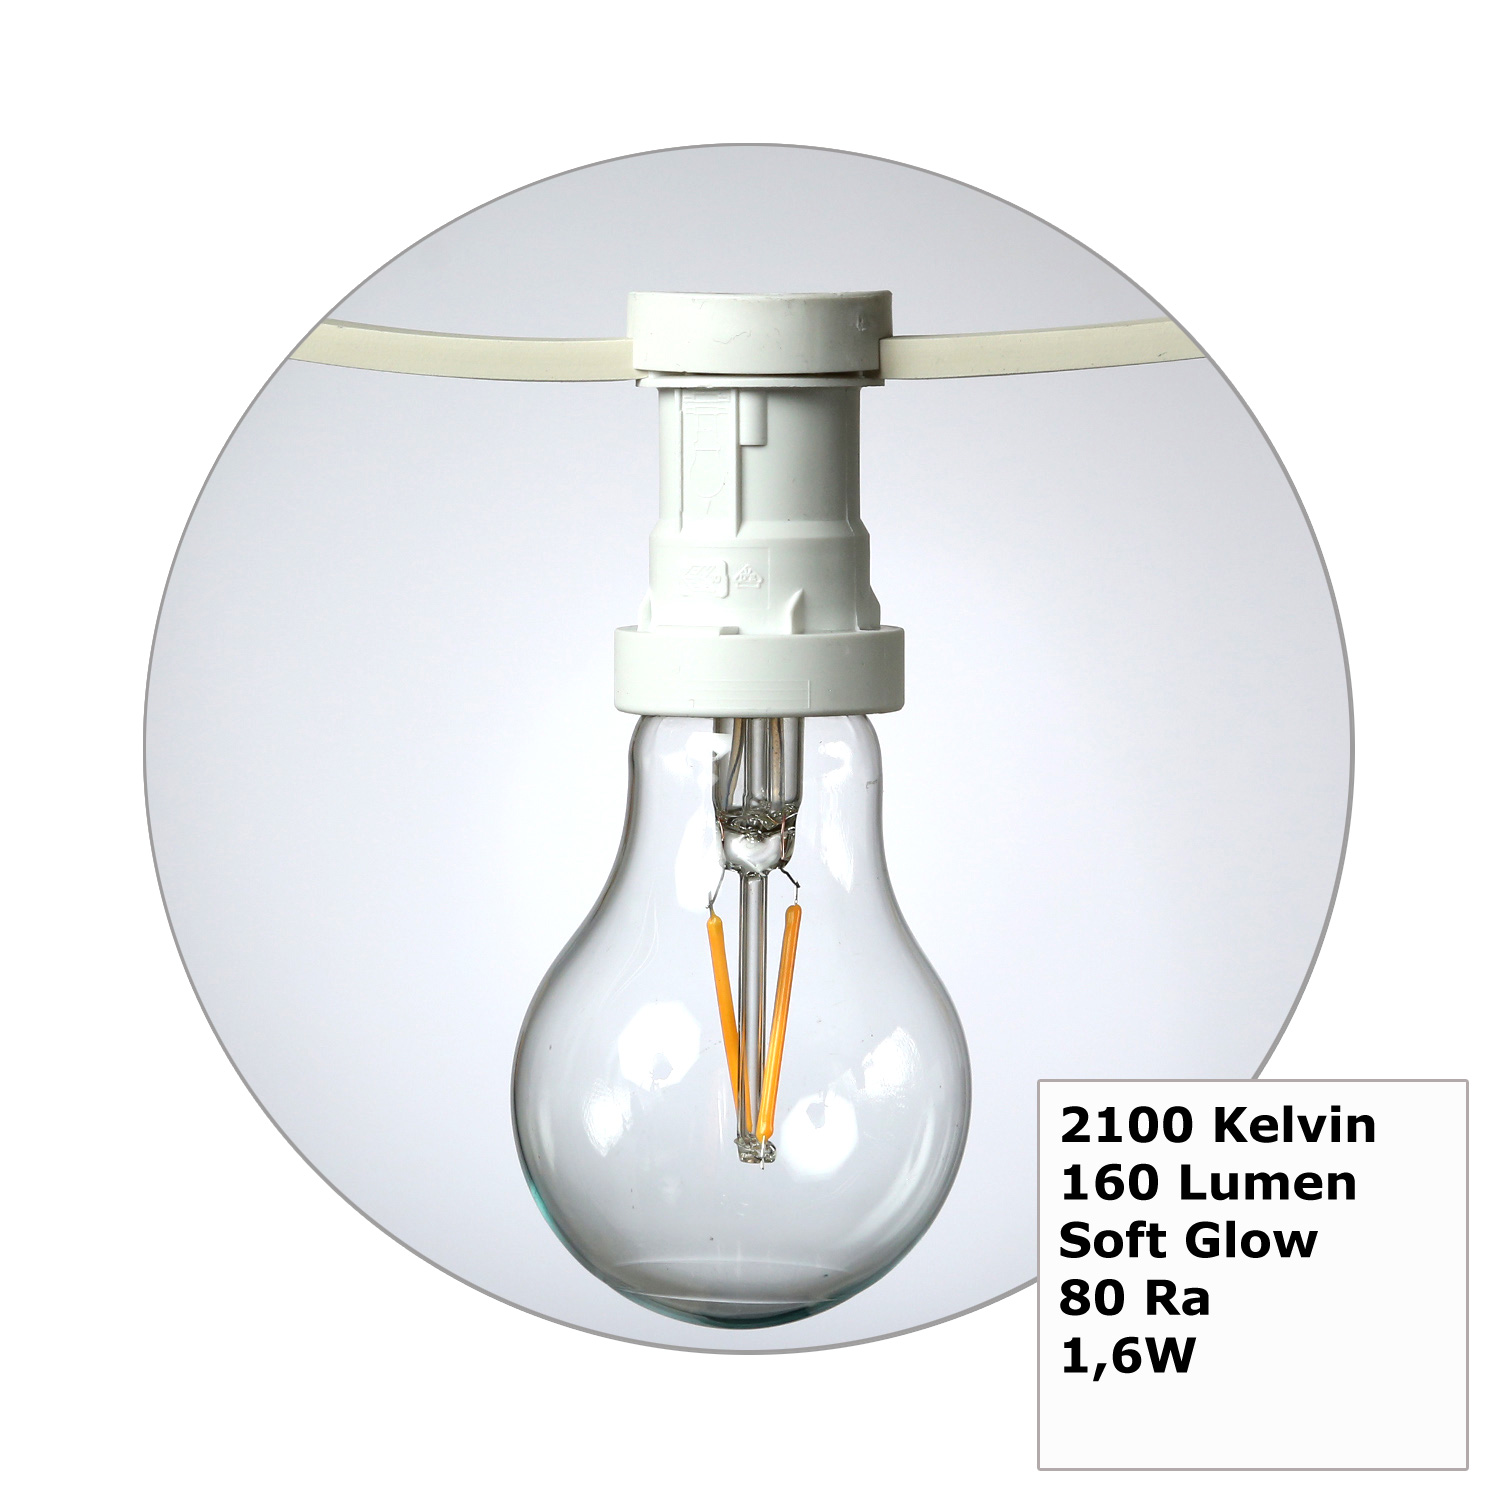 Illu-/Partylichterkette 20m - Außenlichterkette weiß - Made in Germany- 20 Edison LED Filamentlampen